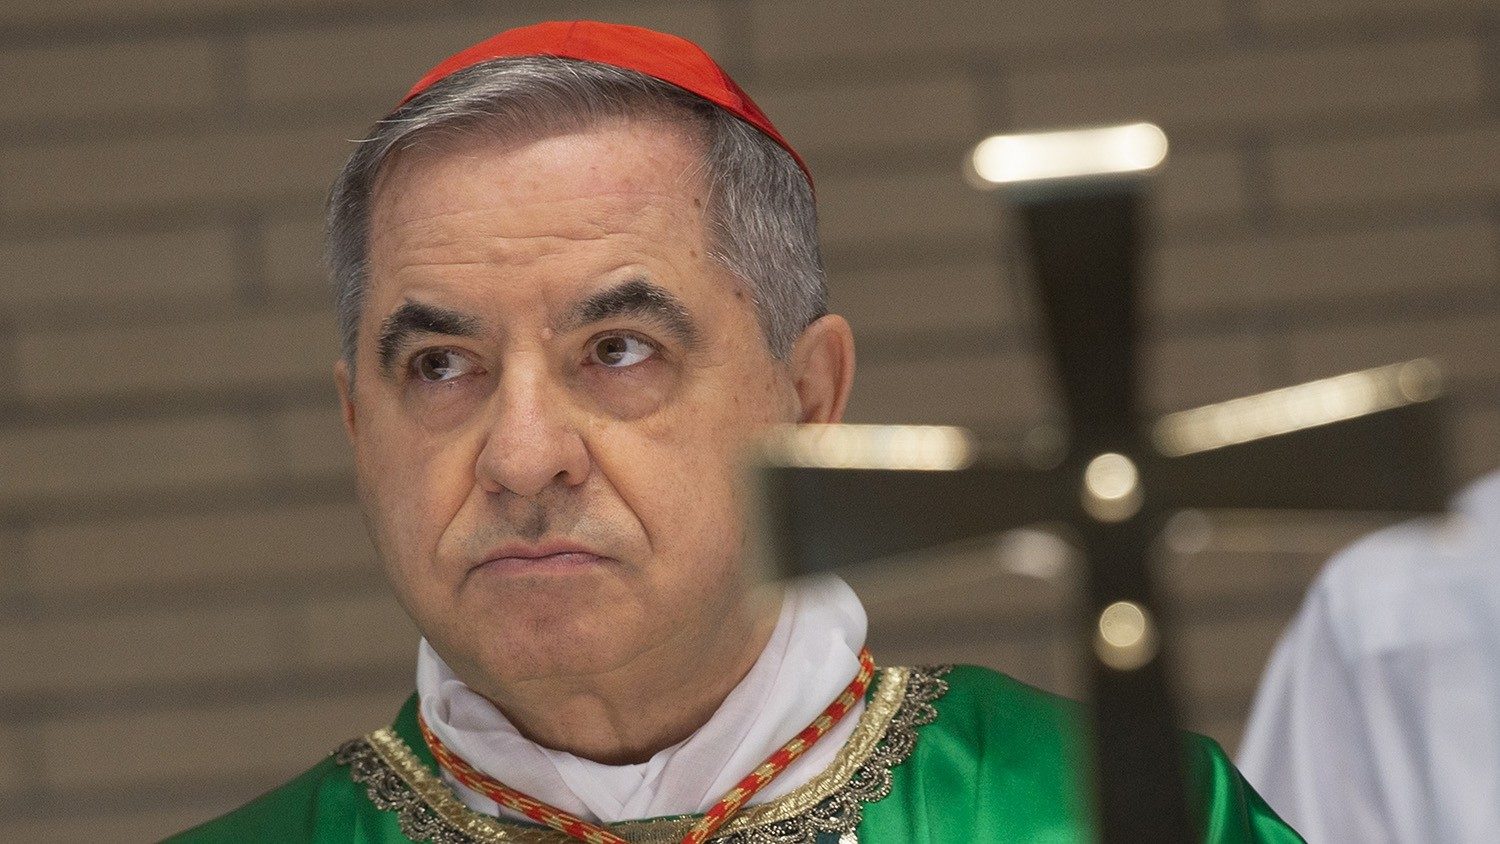 El Papa acepta renuncia de Becciu a derechos vinculados con el cardenalato  - Vatican News